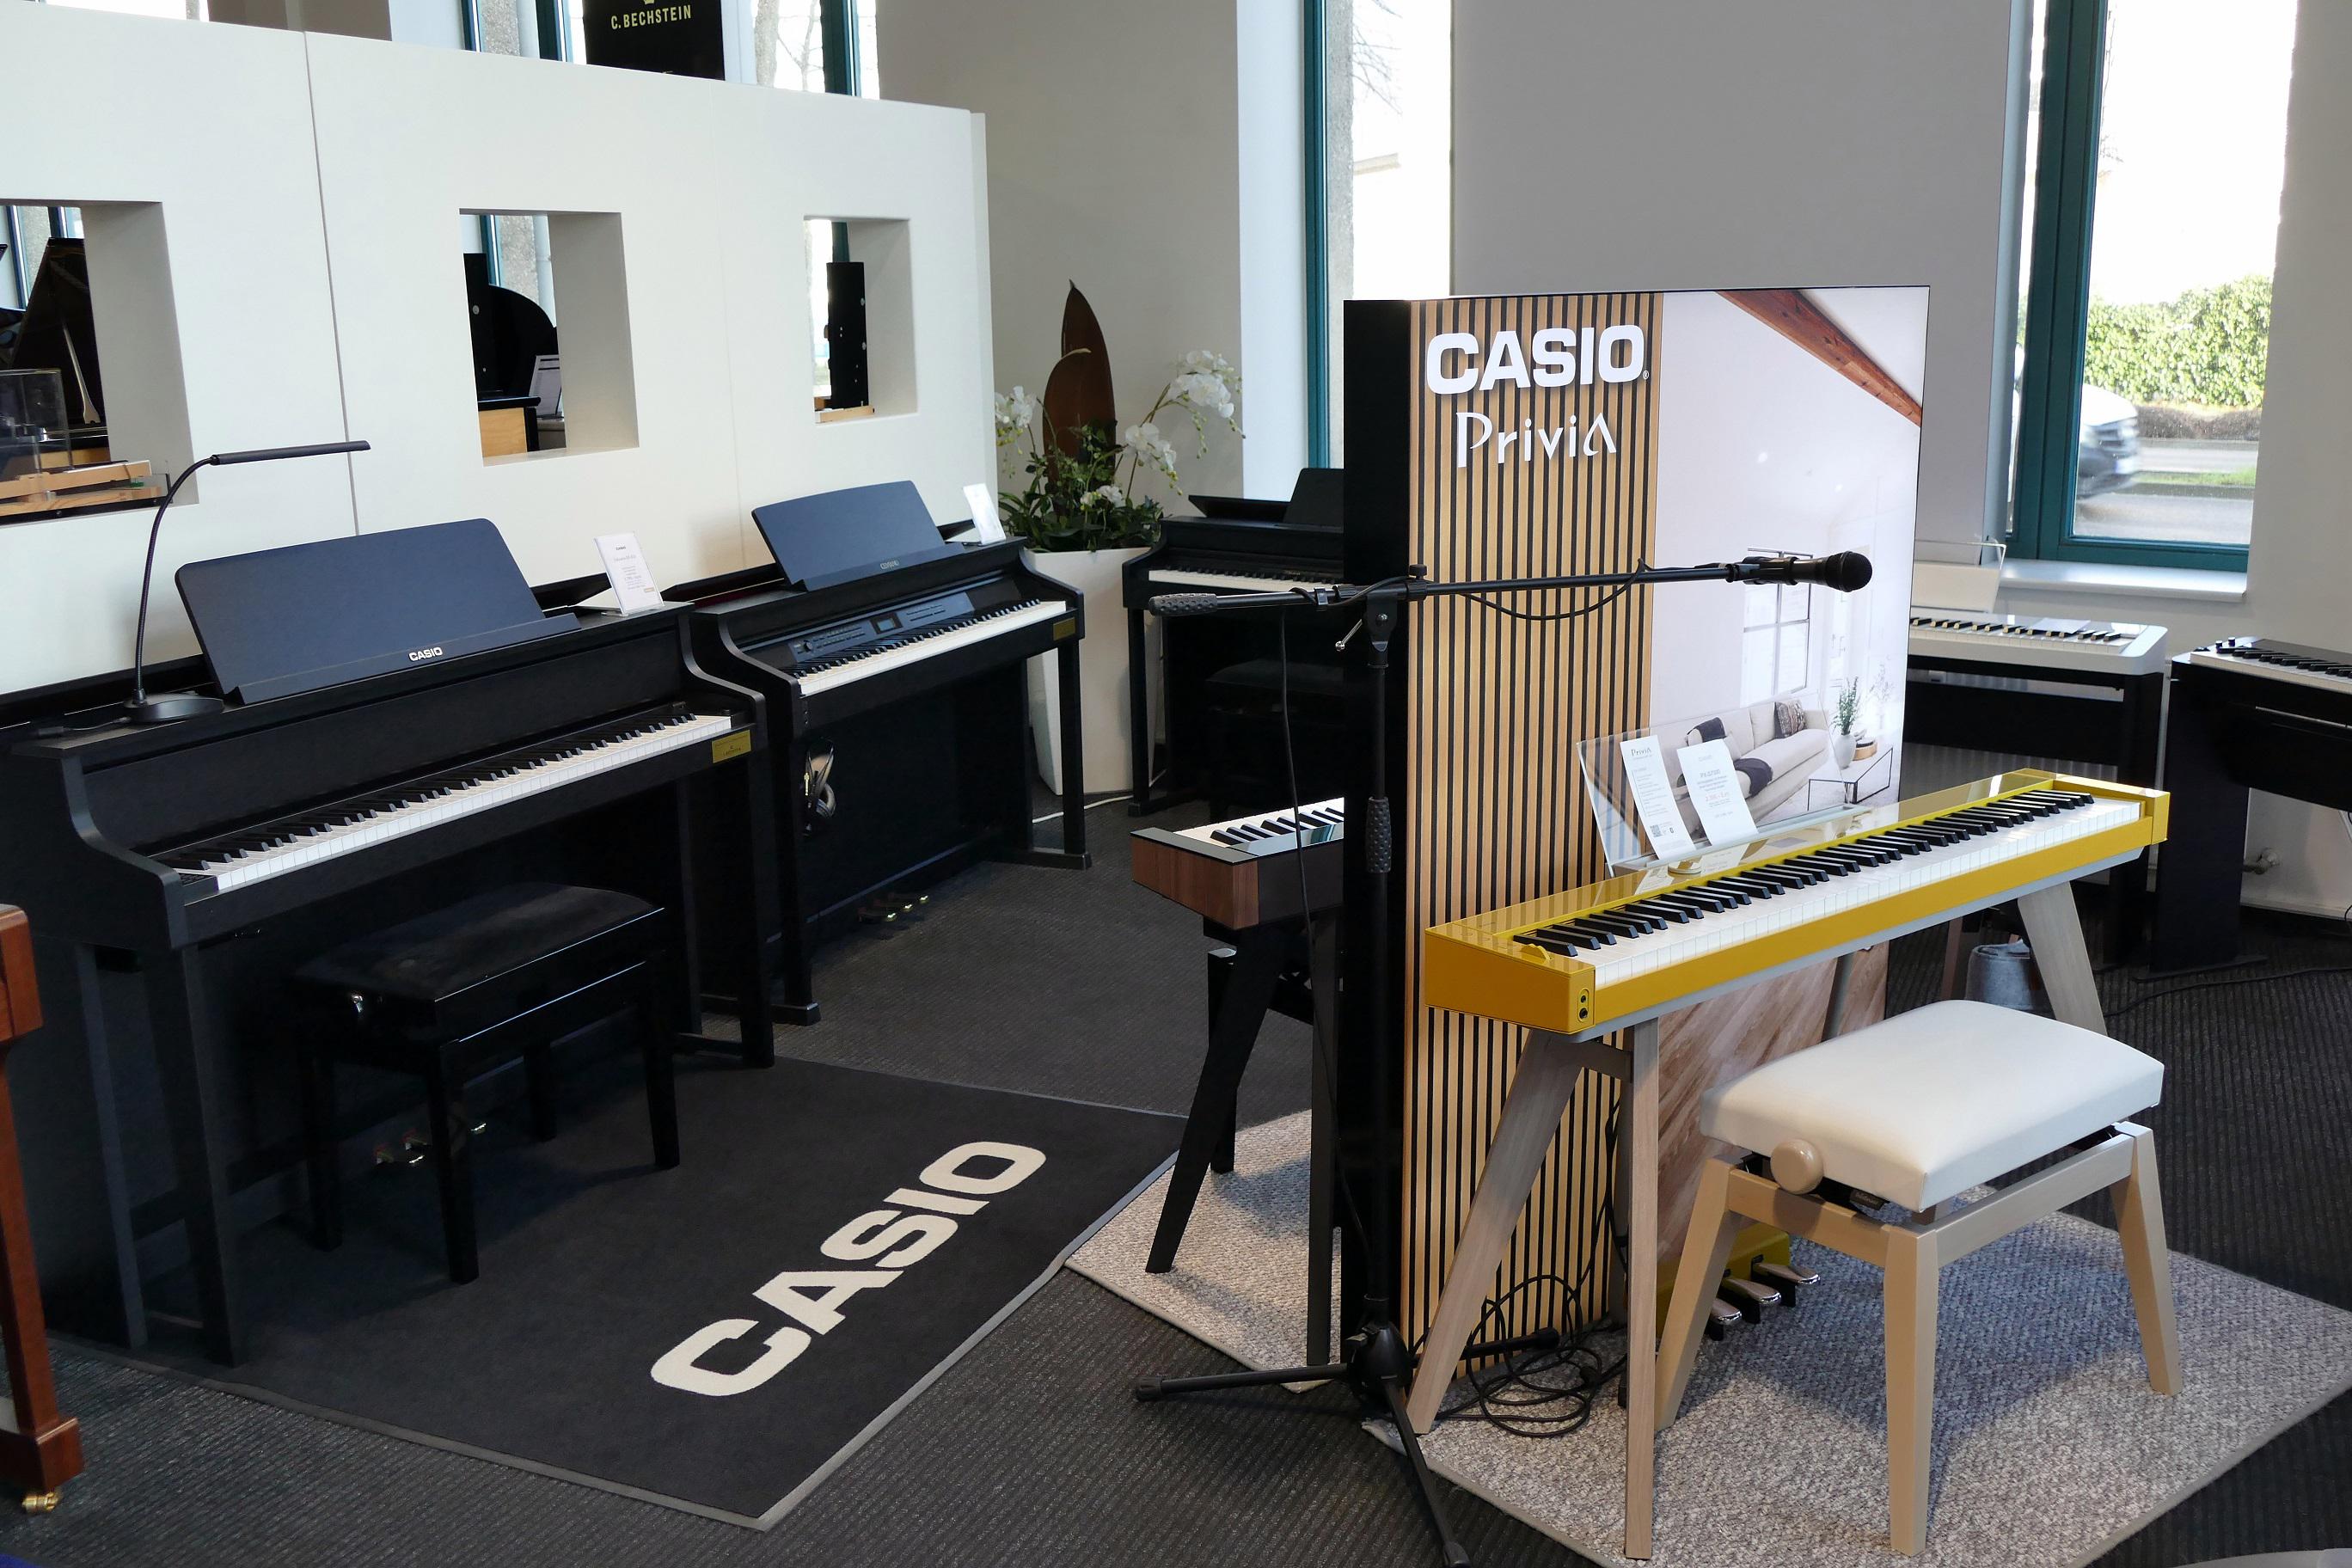 Digitalpianos der Marke CASIO in Ihrem C. Bechstein Centrum Leipzig.